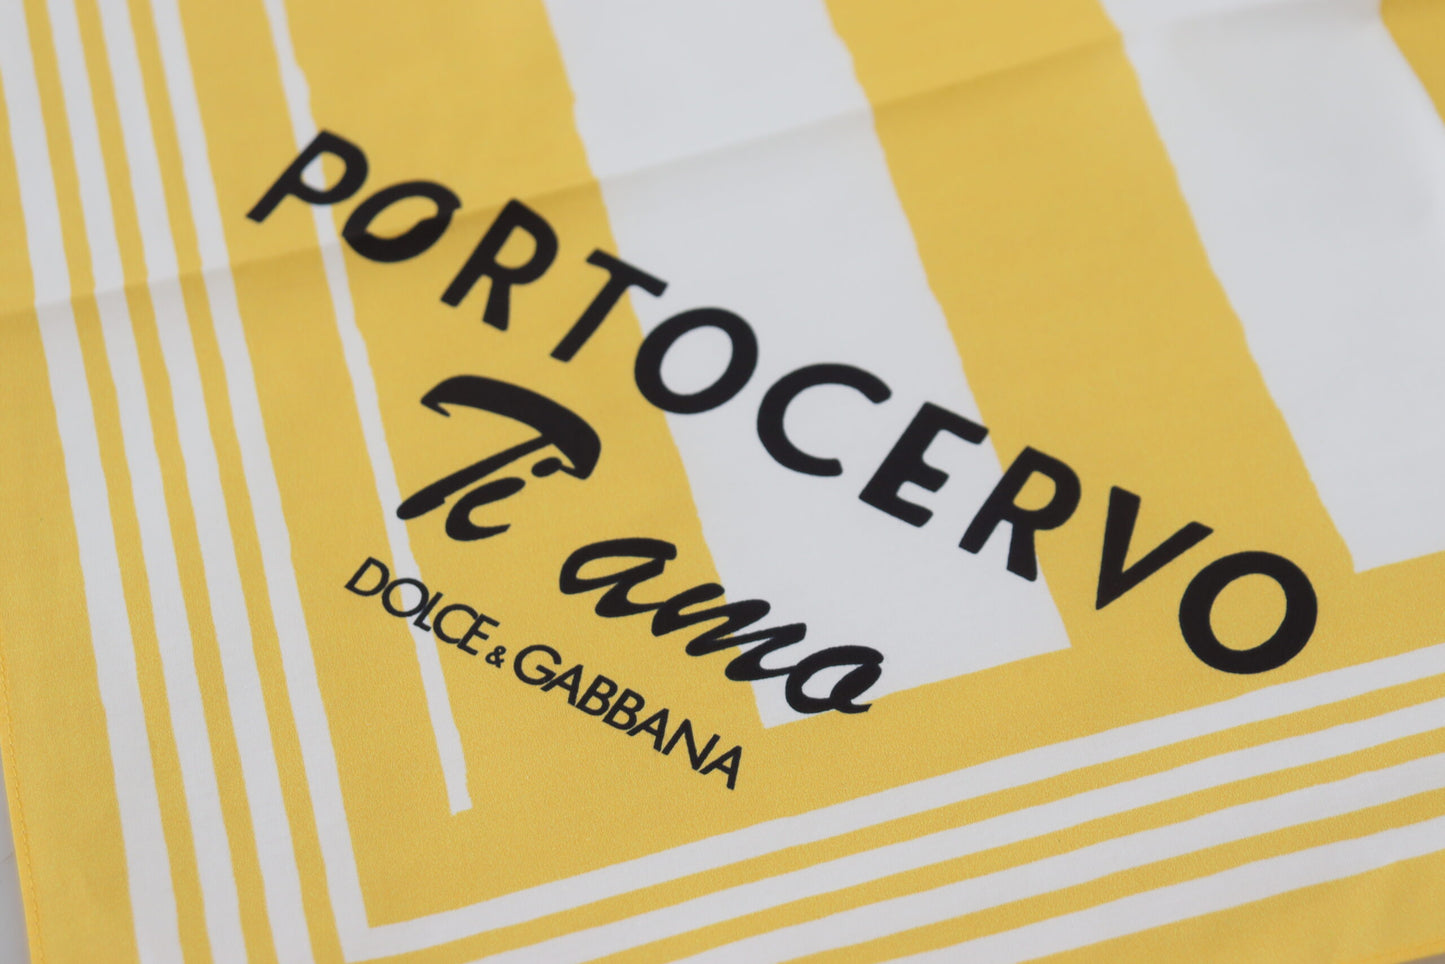 Dolce & Gabbana Yellow Portocervo Baumwollschal -Wrap -Schal